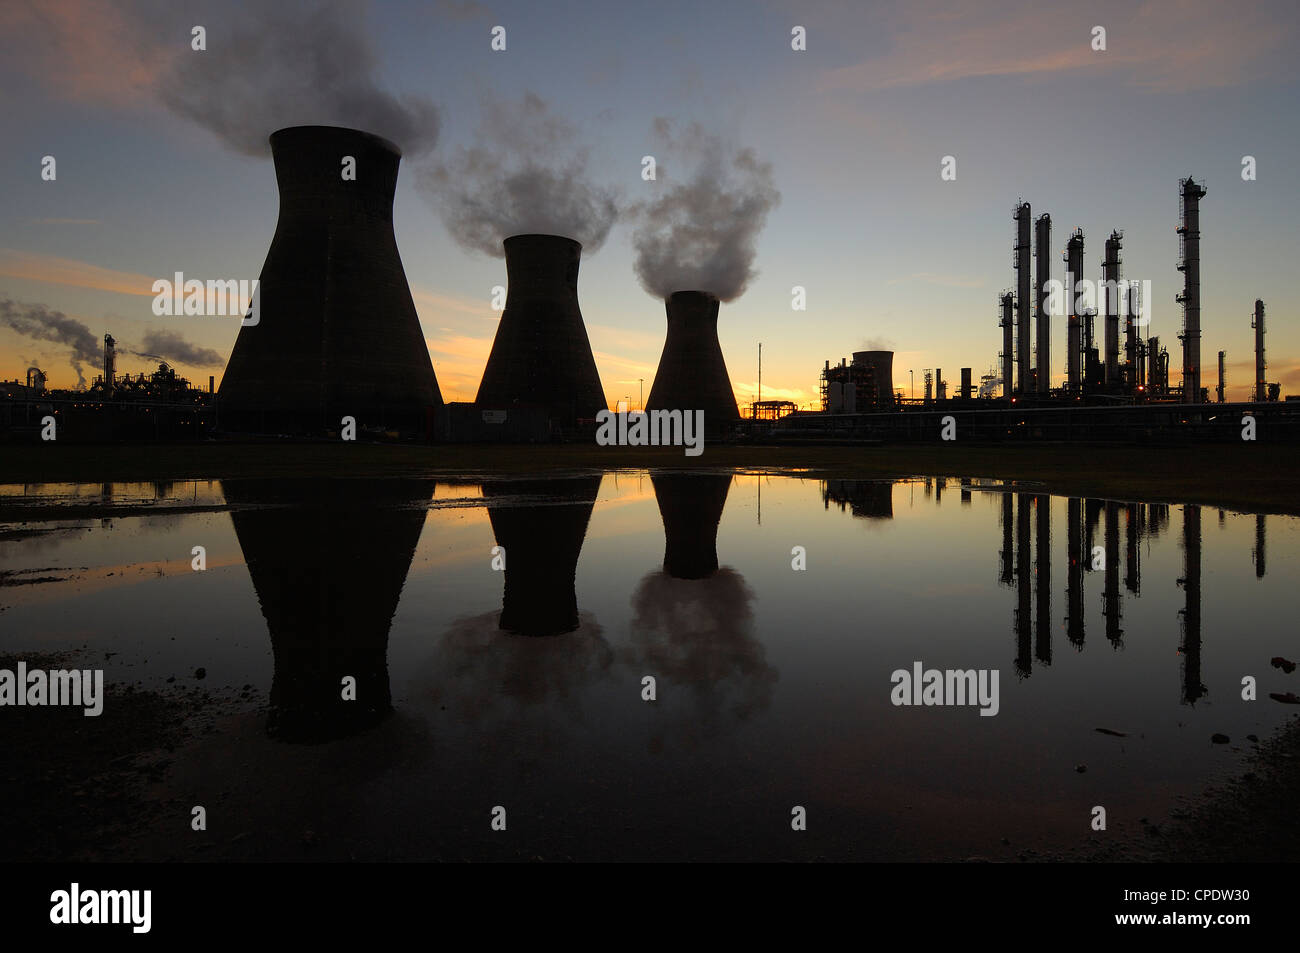 Les tours de refroidissement, des cheminées, et de raffinerie usine pétrochimique énoncés contre un ciel du soir, Falkirk, Ecosse, Royaume-Uni Banque D'Images